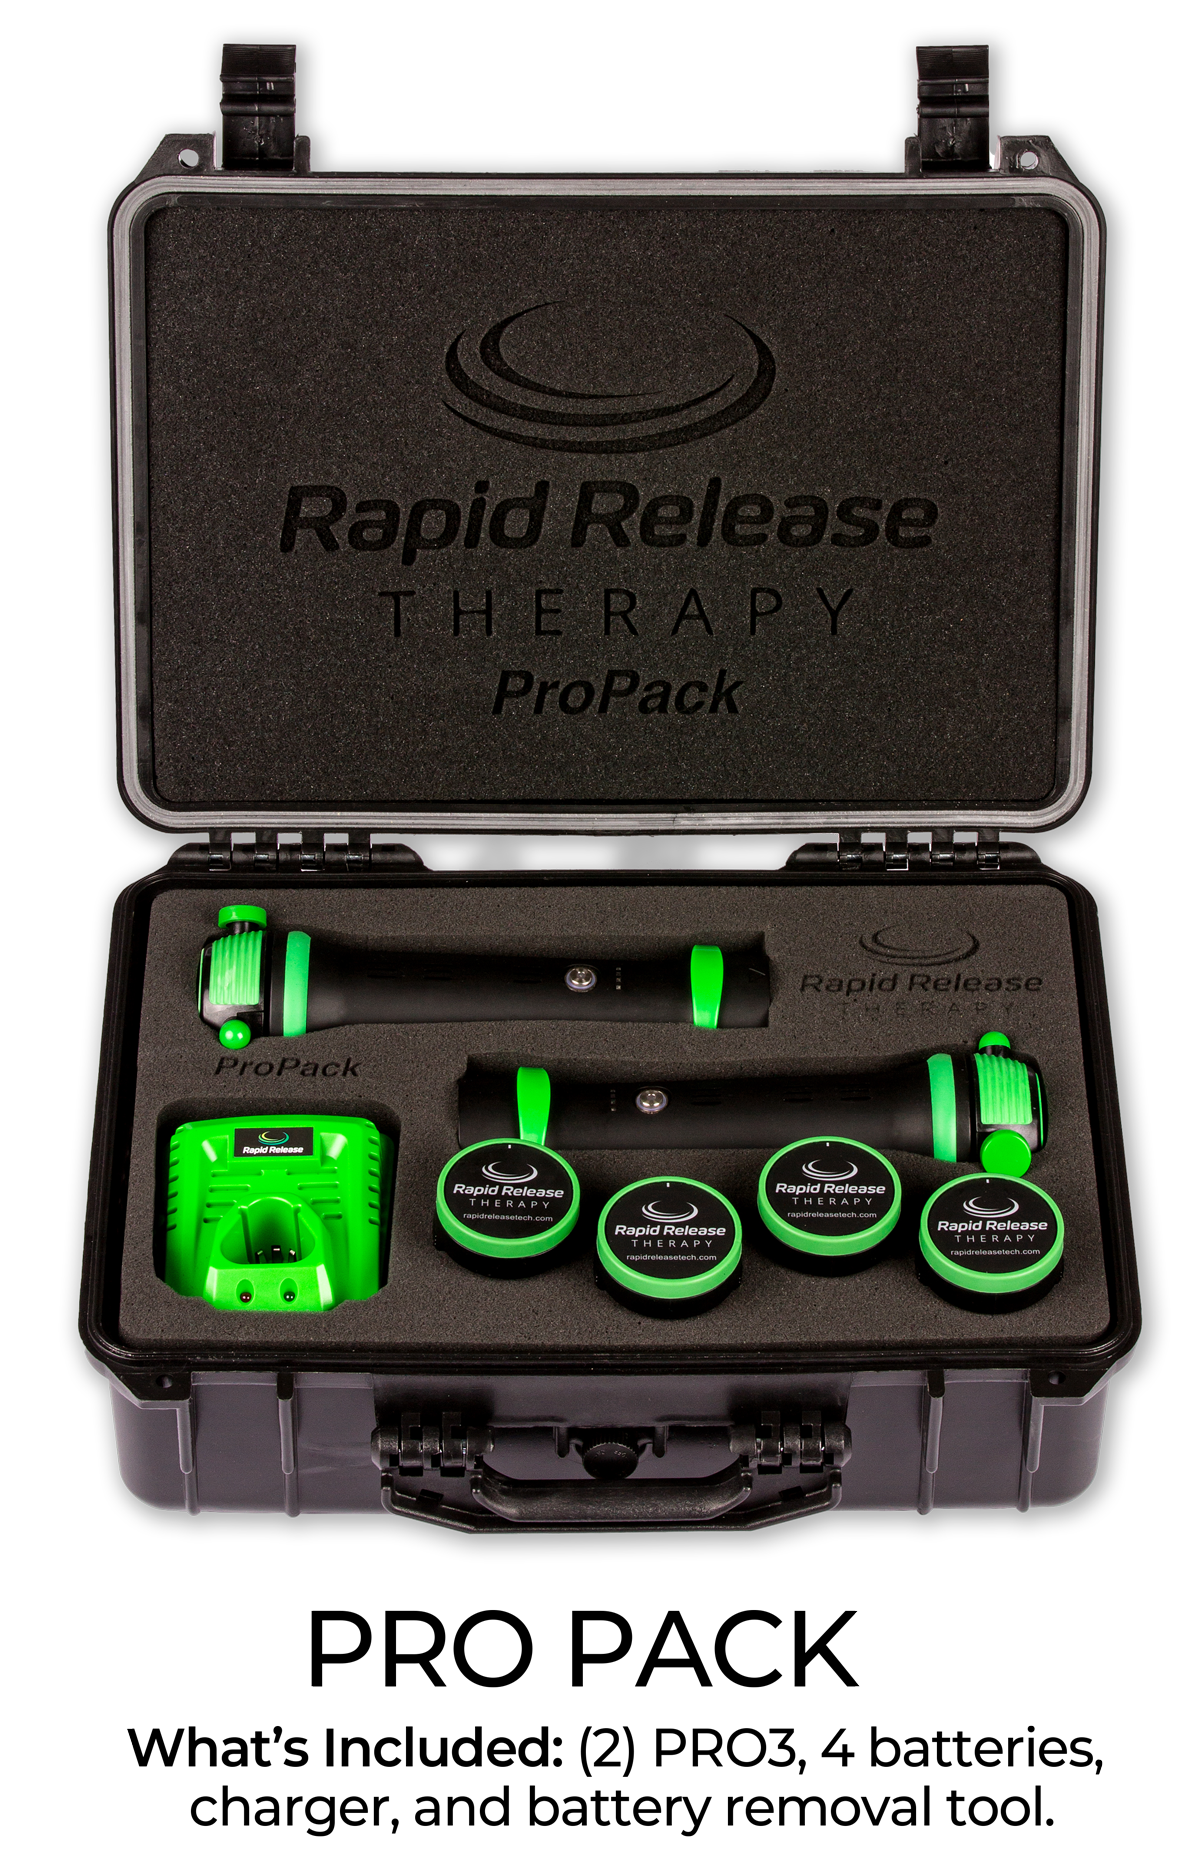 PRO3 Pro Pack (2) PRO3 (4) batteries (1) charger (1) Pro case